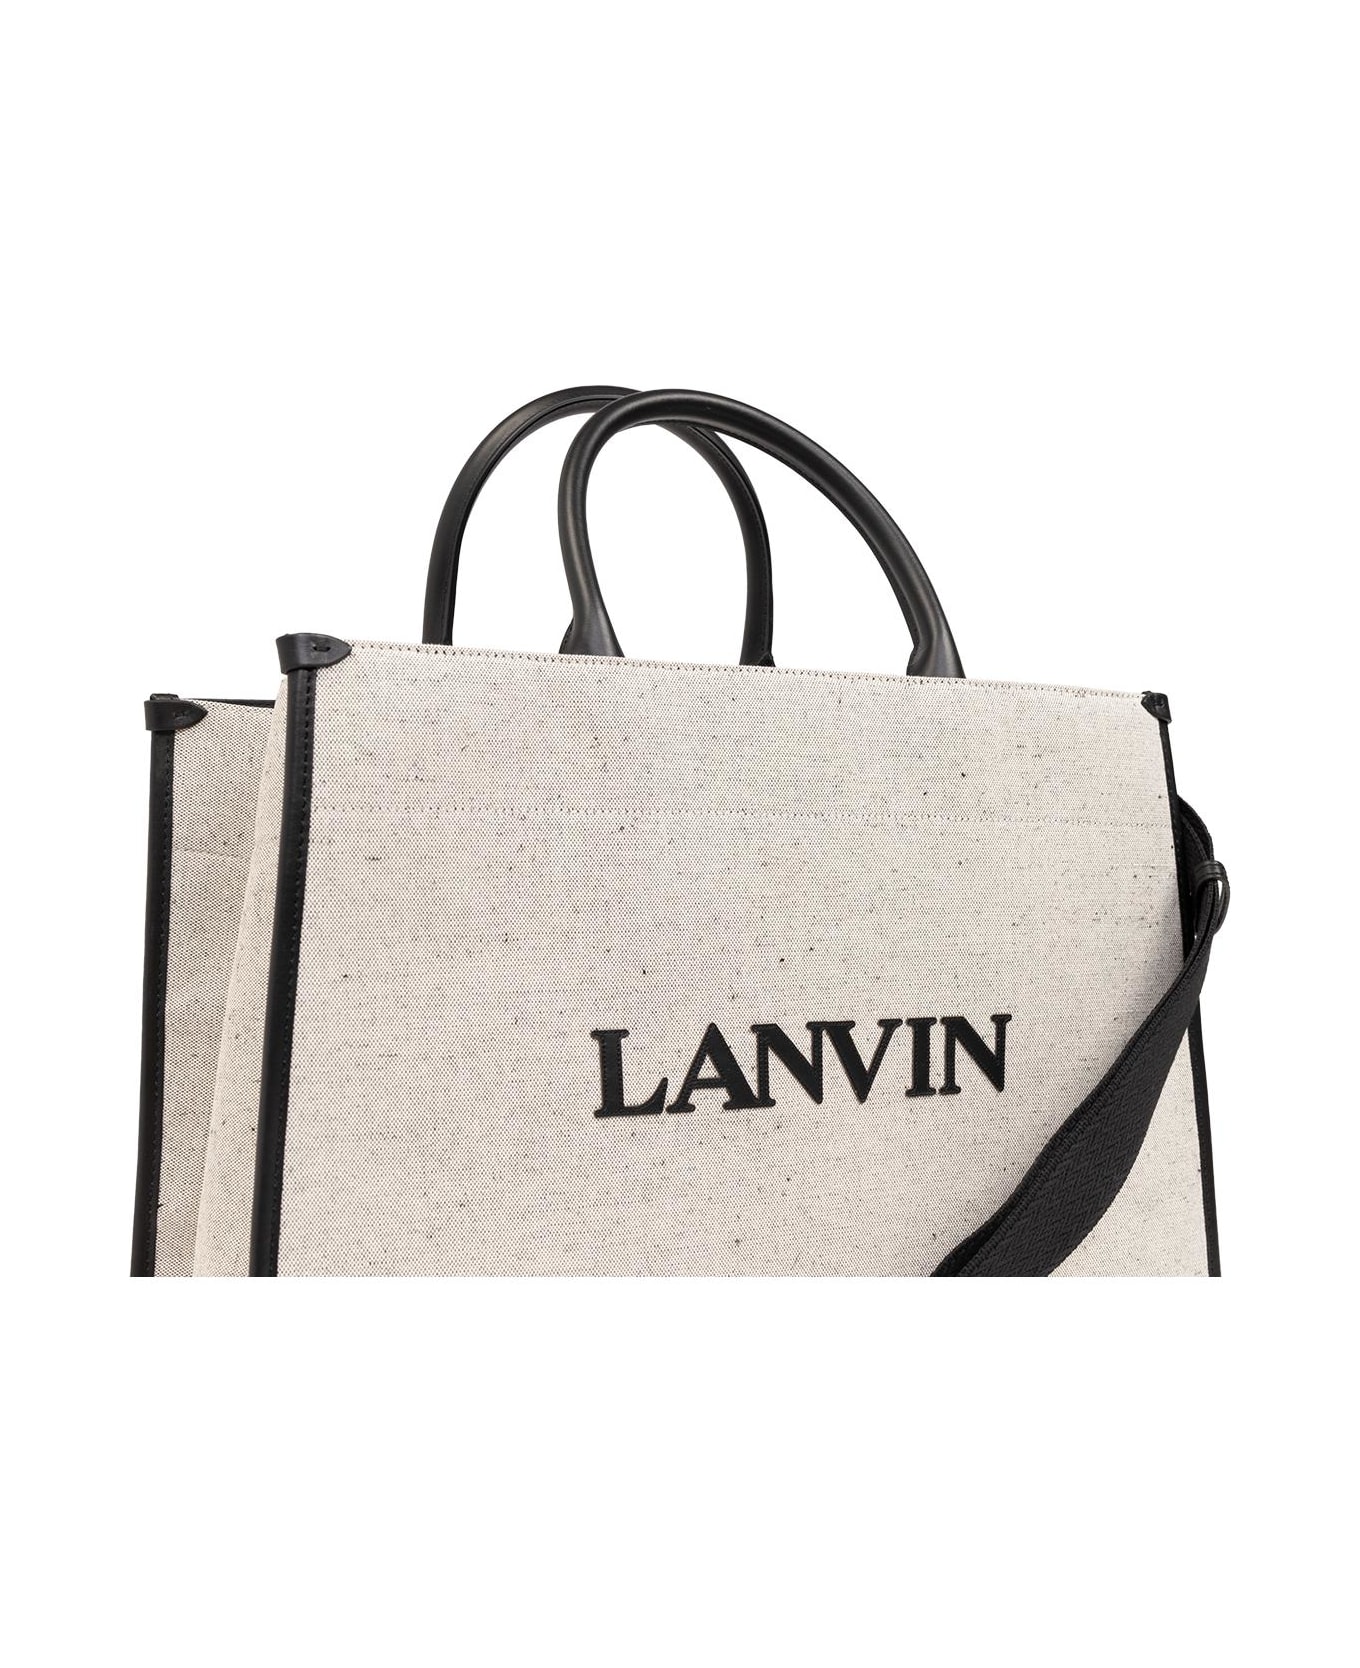 Lanvin 'mm' Shopper Bag - Beige Black トートバッグ